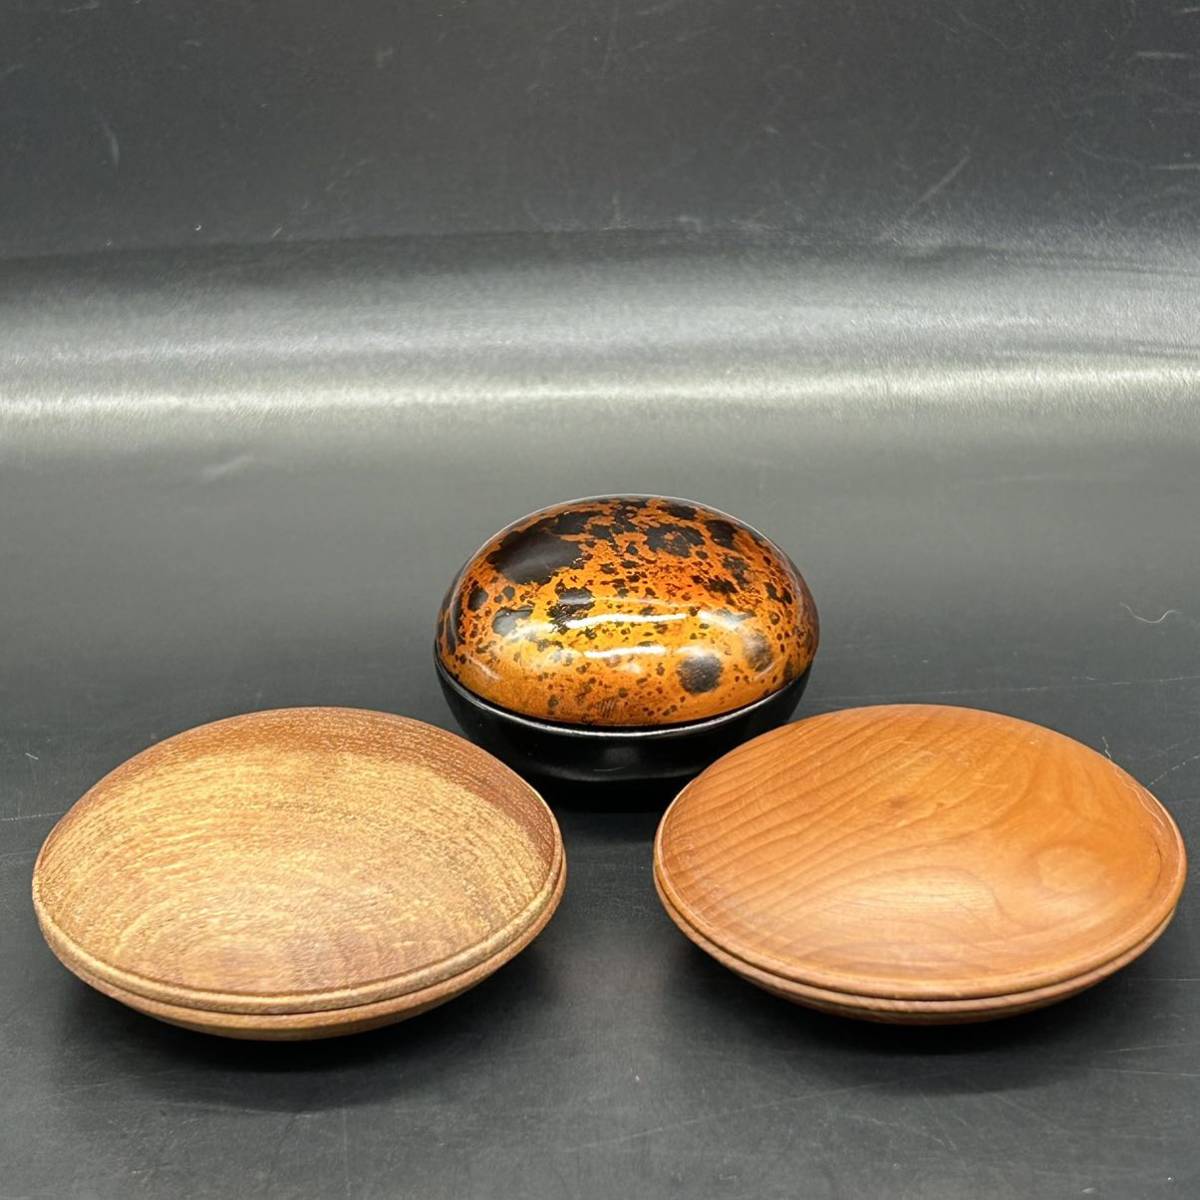 香合3個まとめ 携帯にも便利な香合 御香入れ 木製 漆器 茶道具 香道具 L18-4の画像1